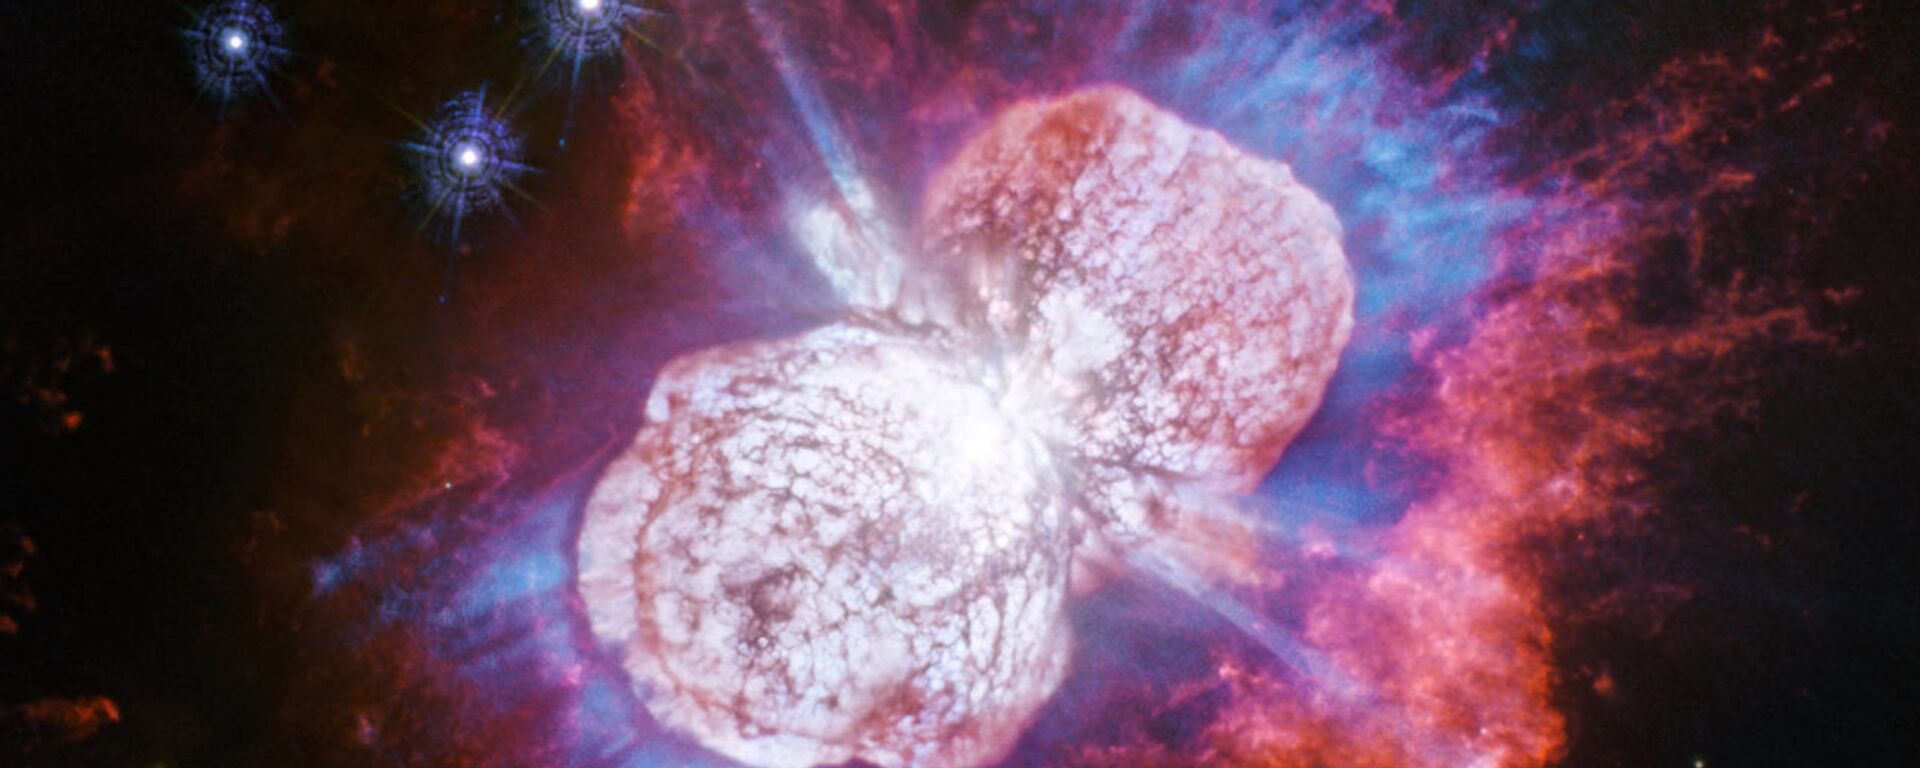 أضخم نجم في درب التبانة - سبوتنيك عربي, 1920, 12.12.2021